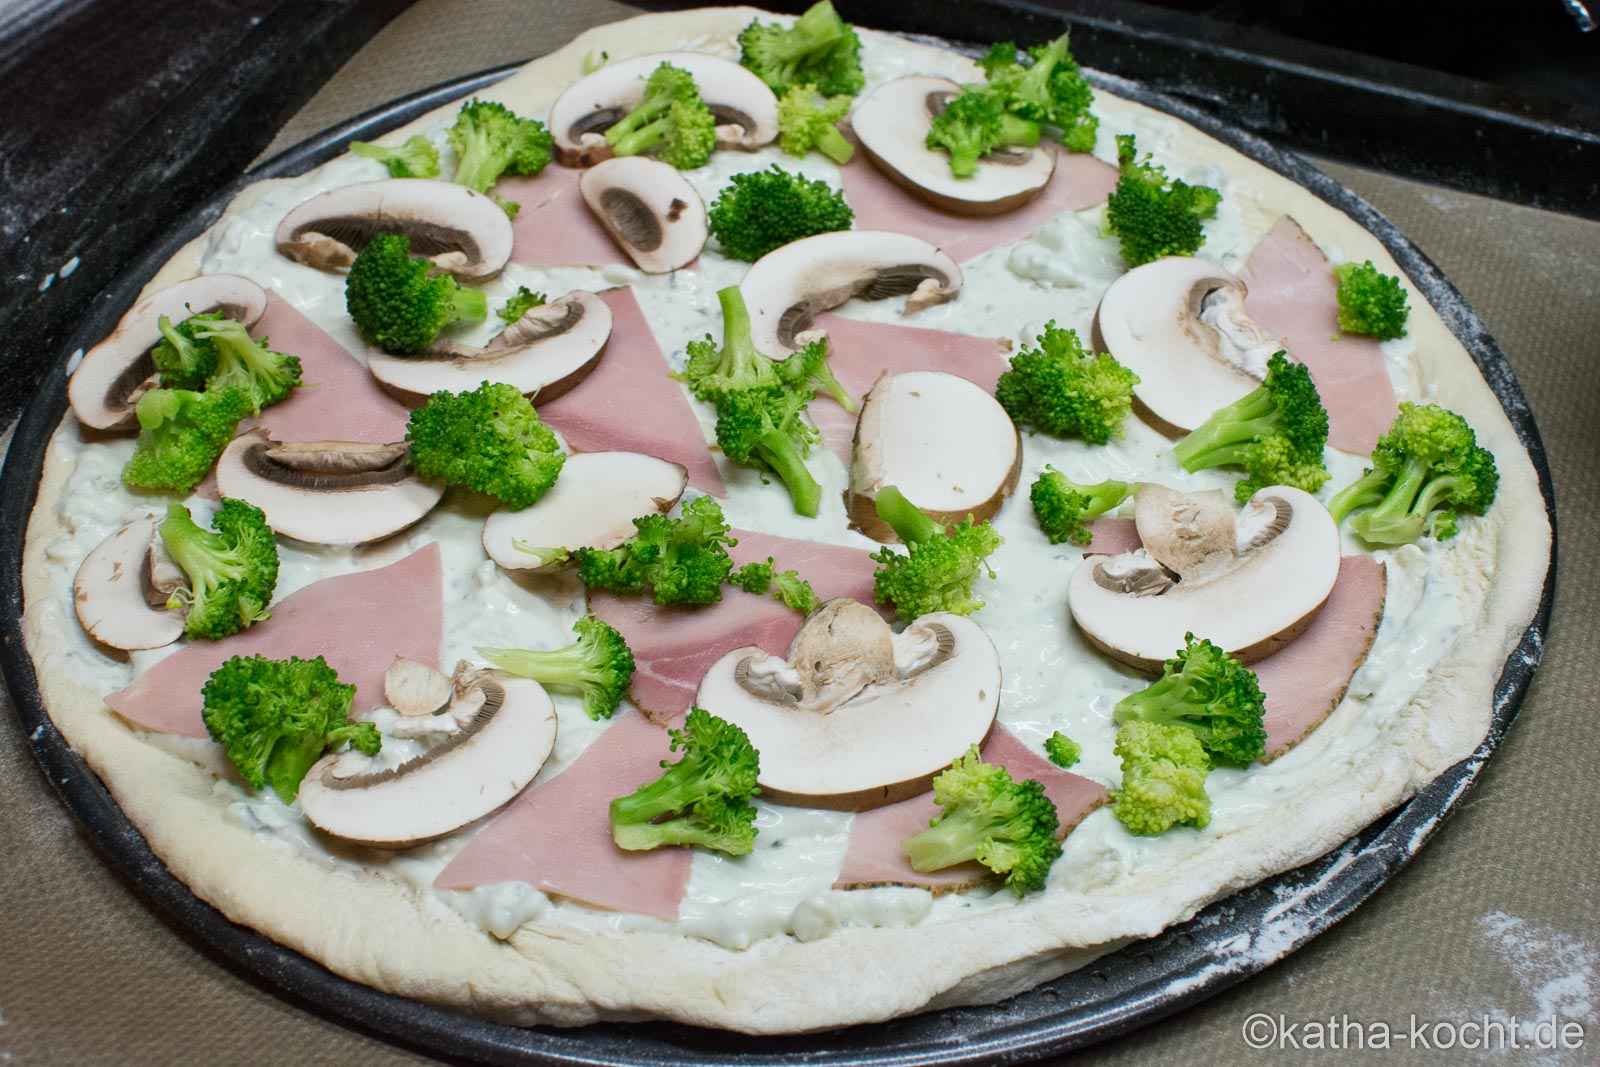 Brokkoli Pizza mit Kochschinken und Roquefort Sauce - Katha-kocht!